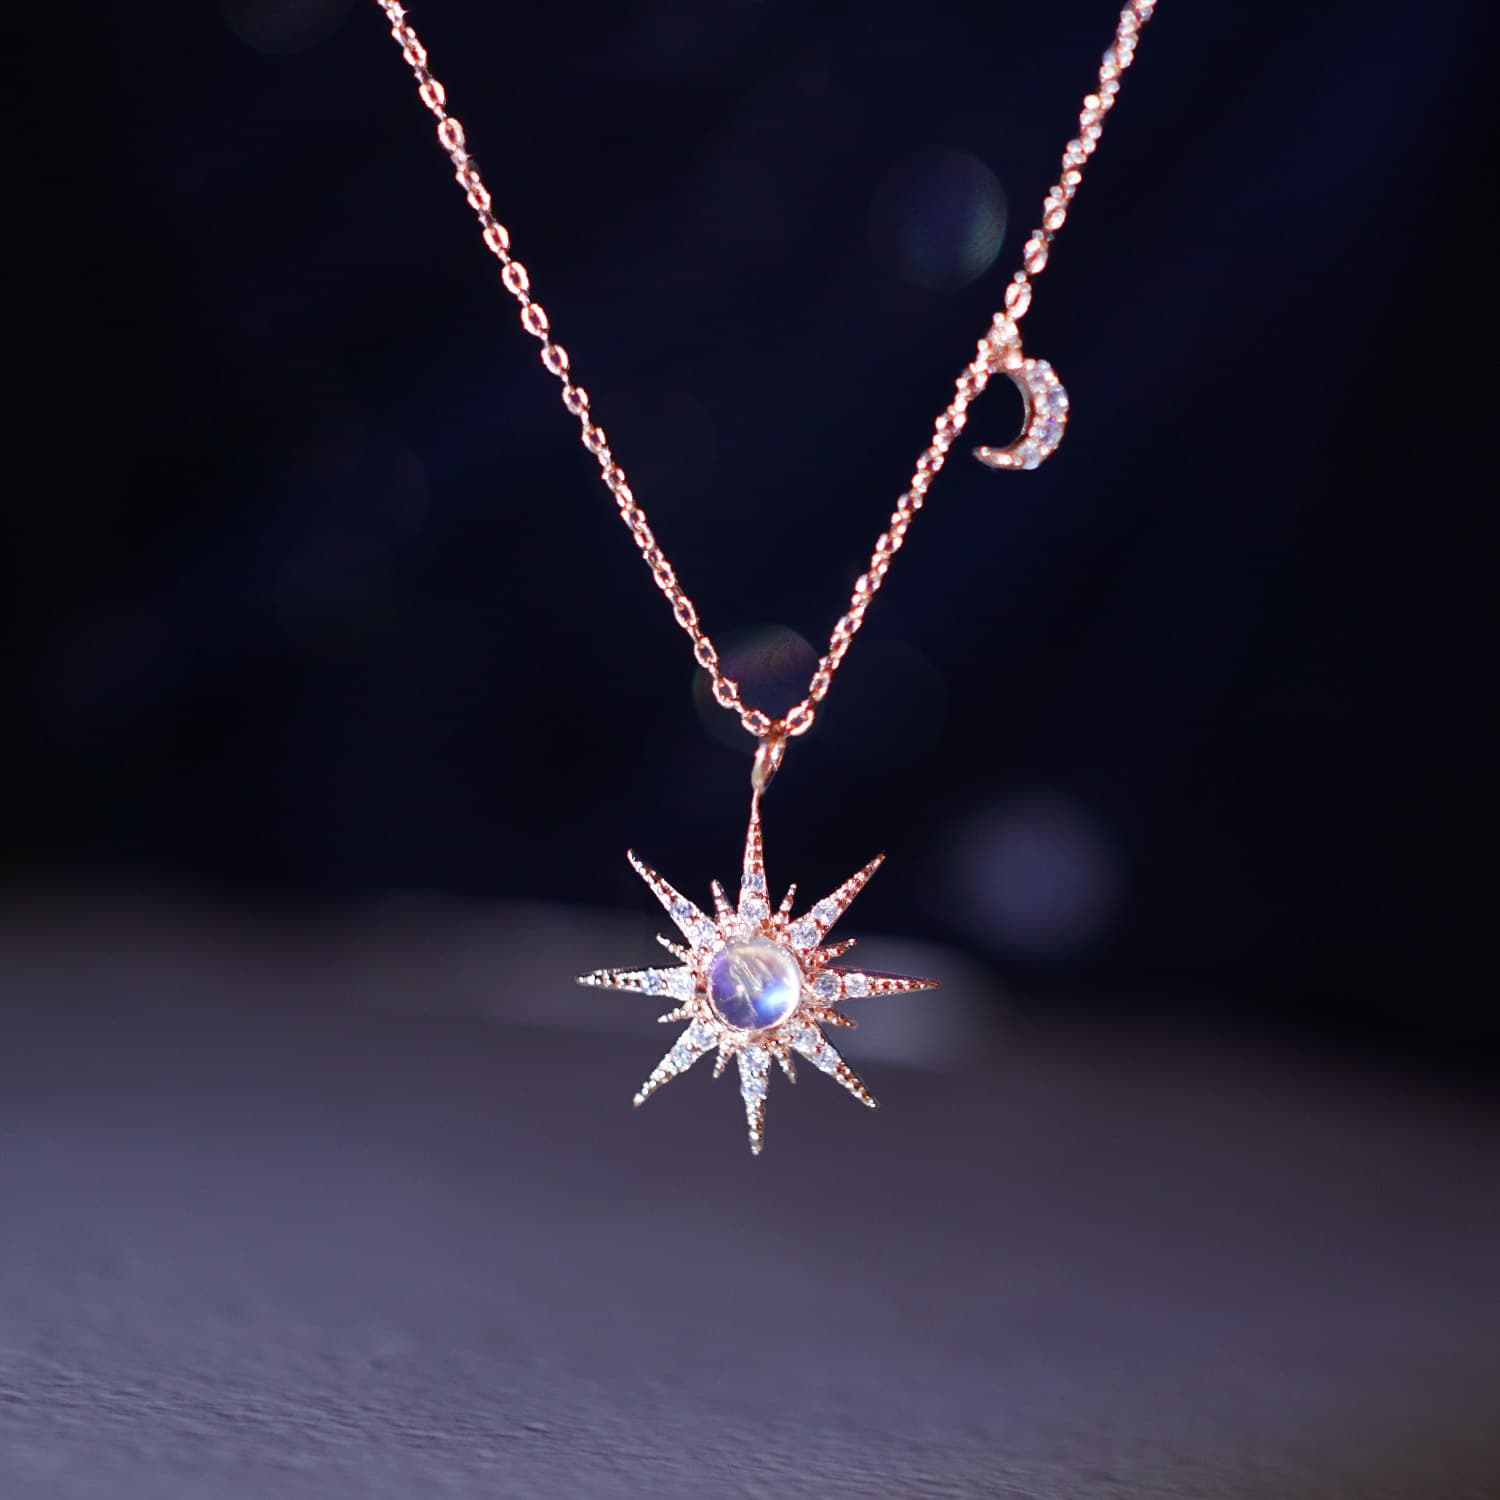 SUNSHINING Necklace RAINBOW MOONSTONE fashion jewelry